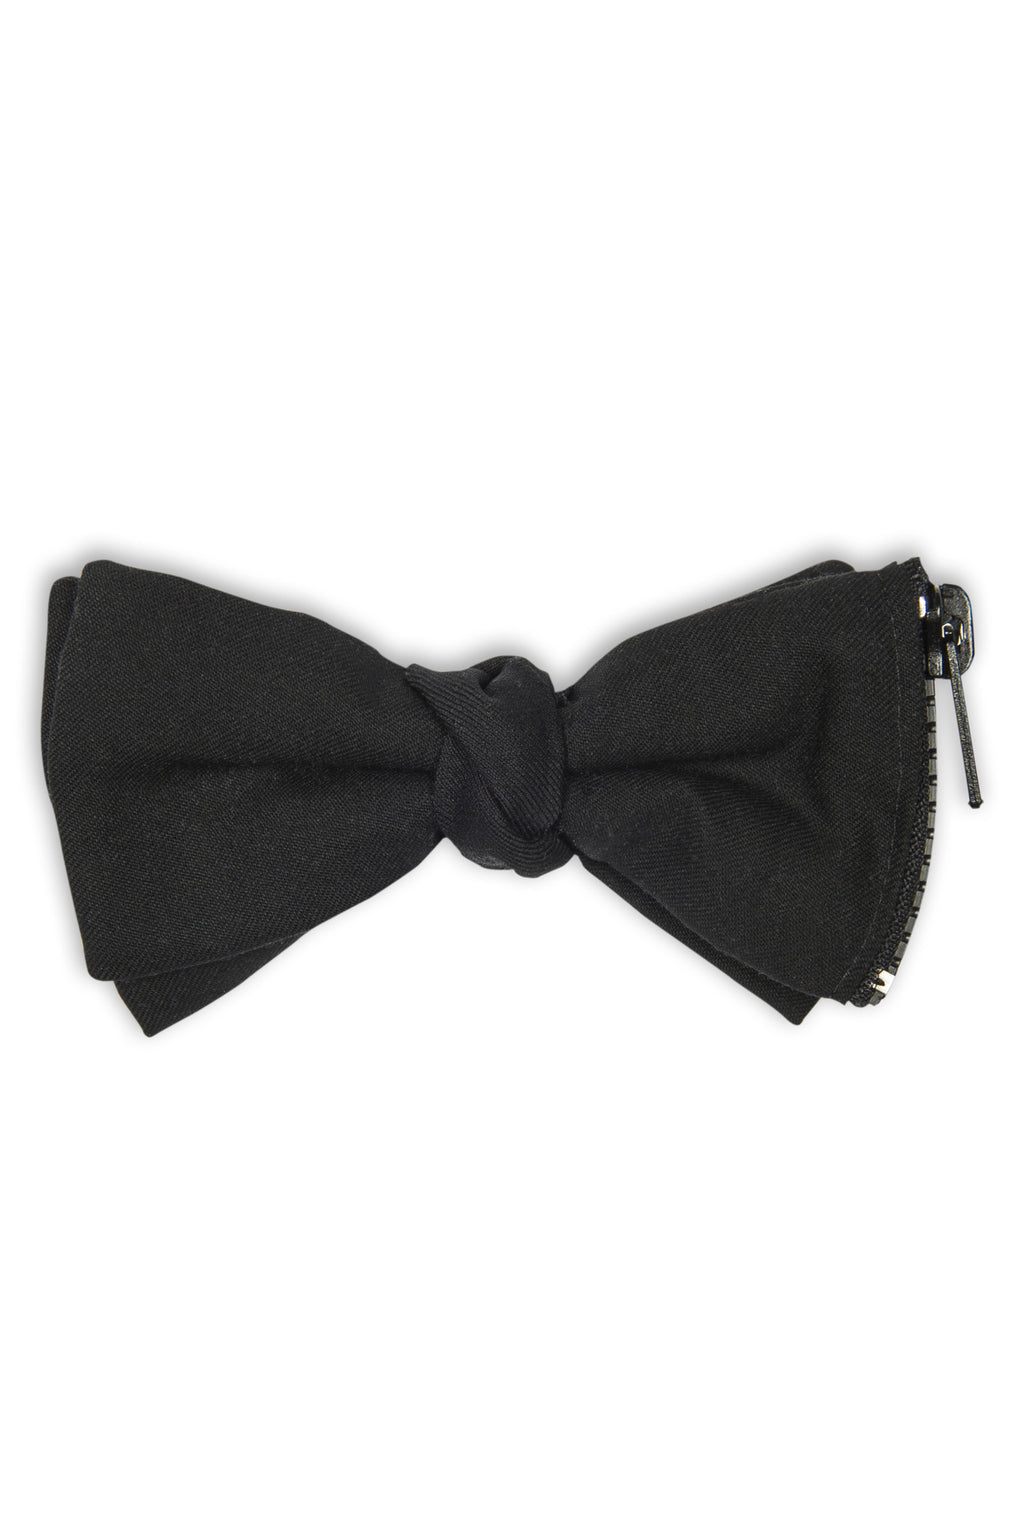 Noeud papillon en laine noire avec zip et poche secrète - Black wool bow tie with zipper and secret pocket. 